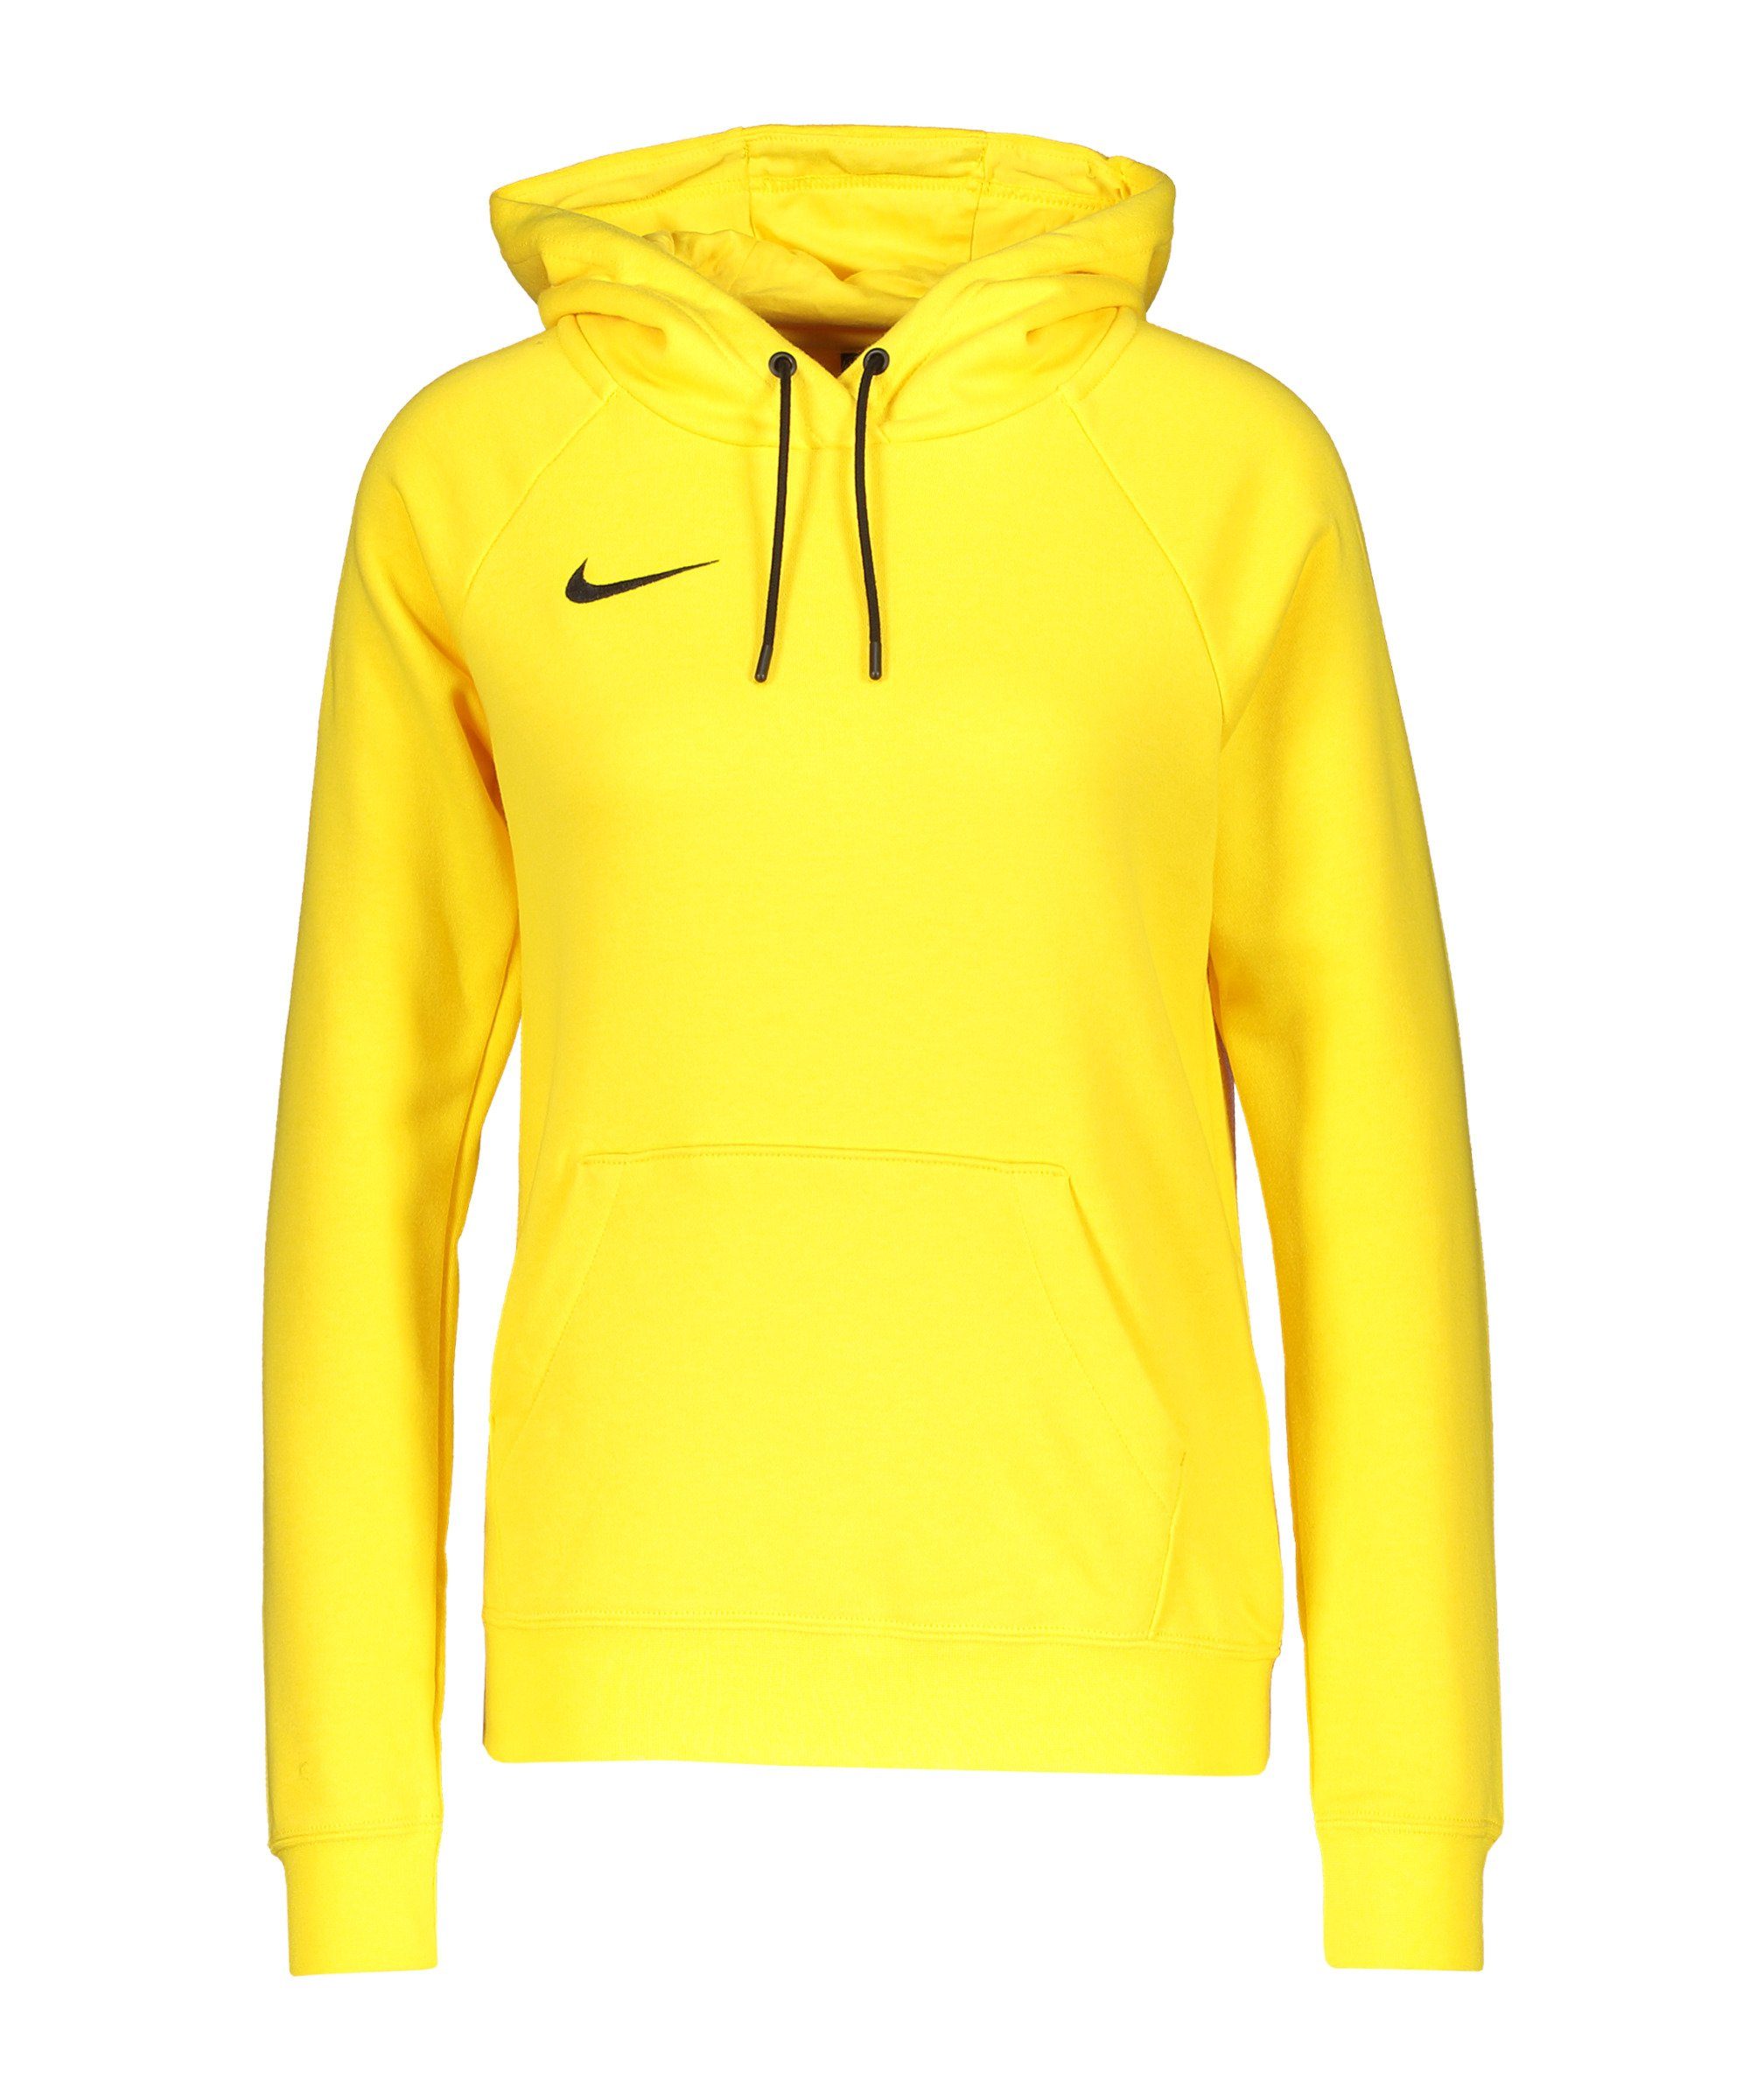 Gelbe Pullover für Damen online kaufen | OTTO